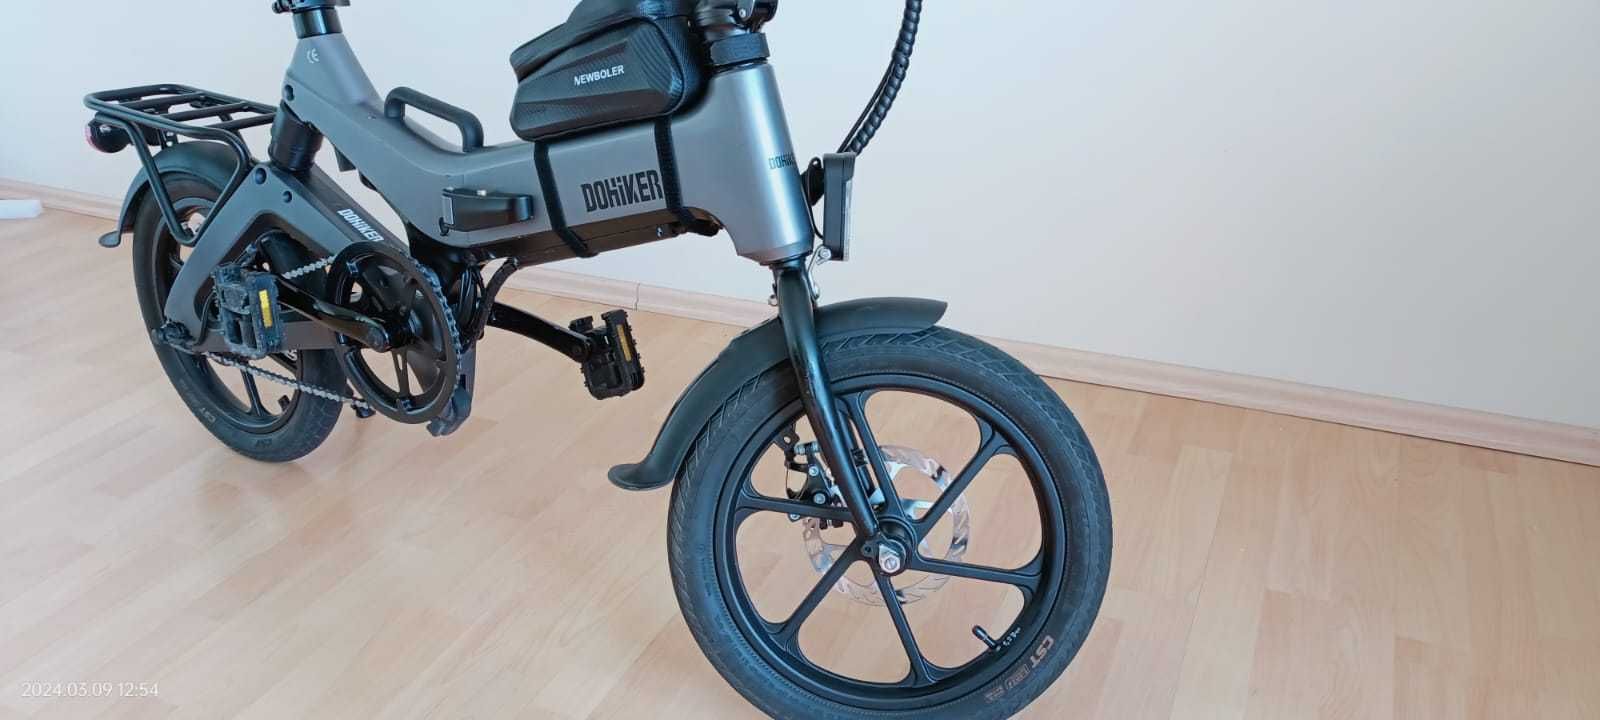 Rower elektryczny składany DOHIKER moped